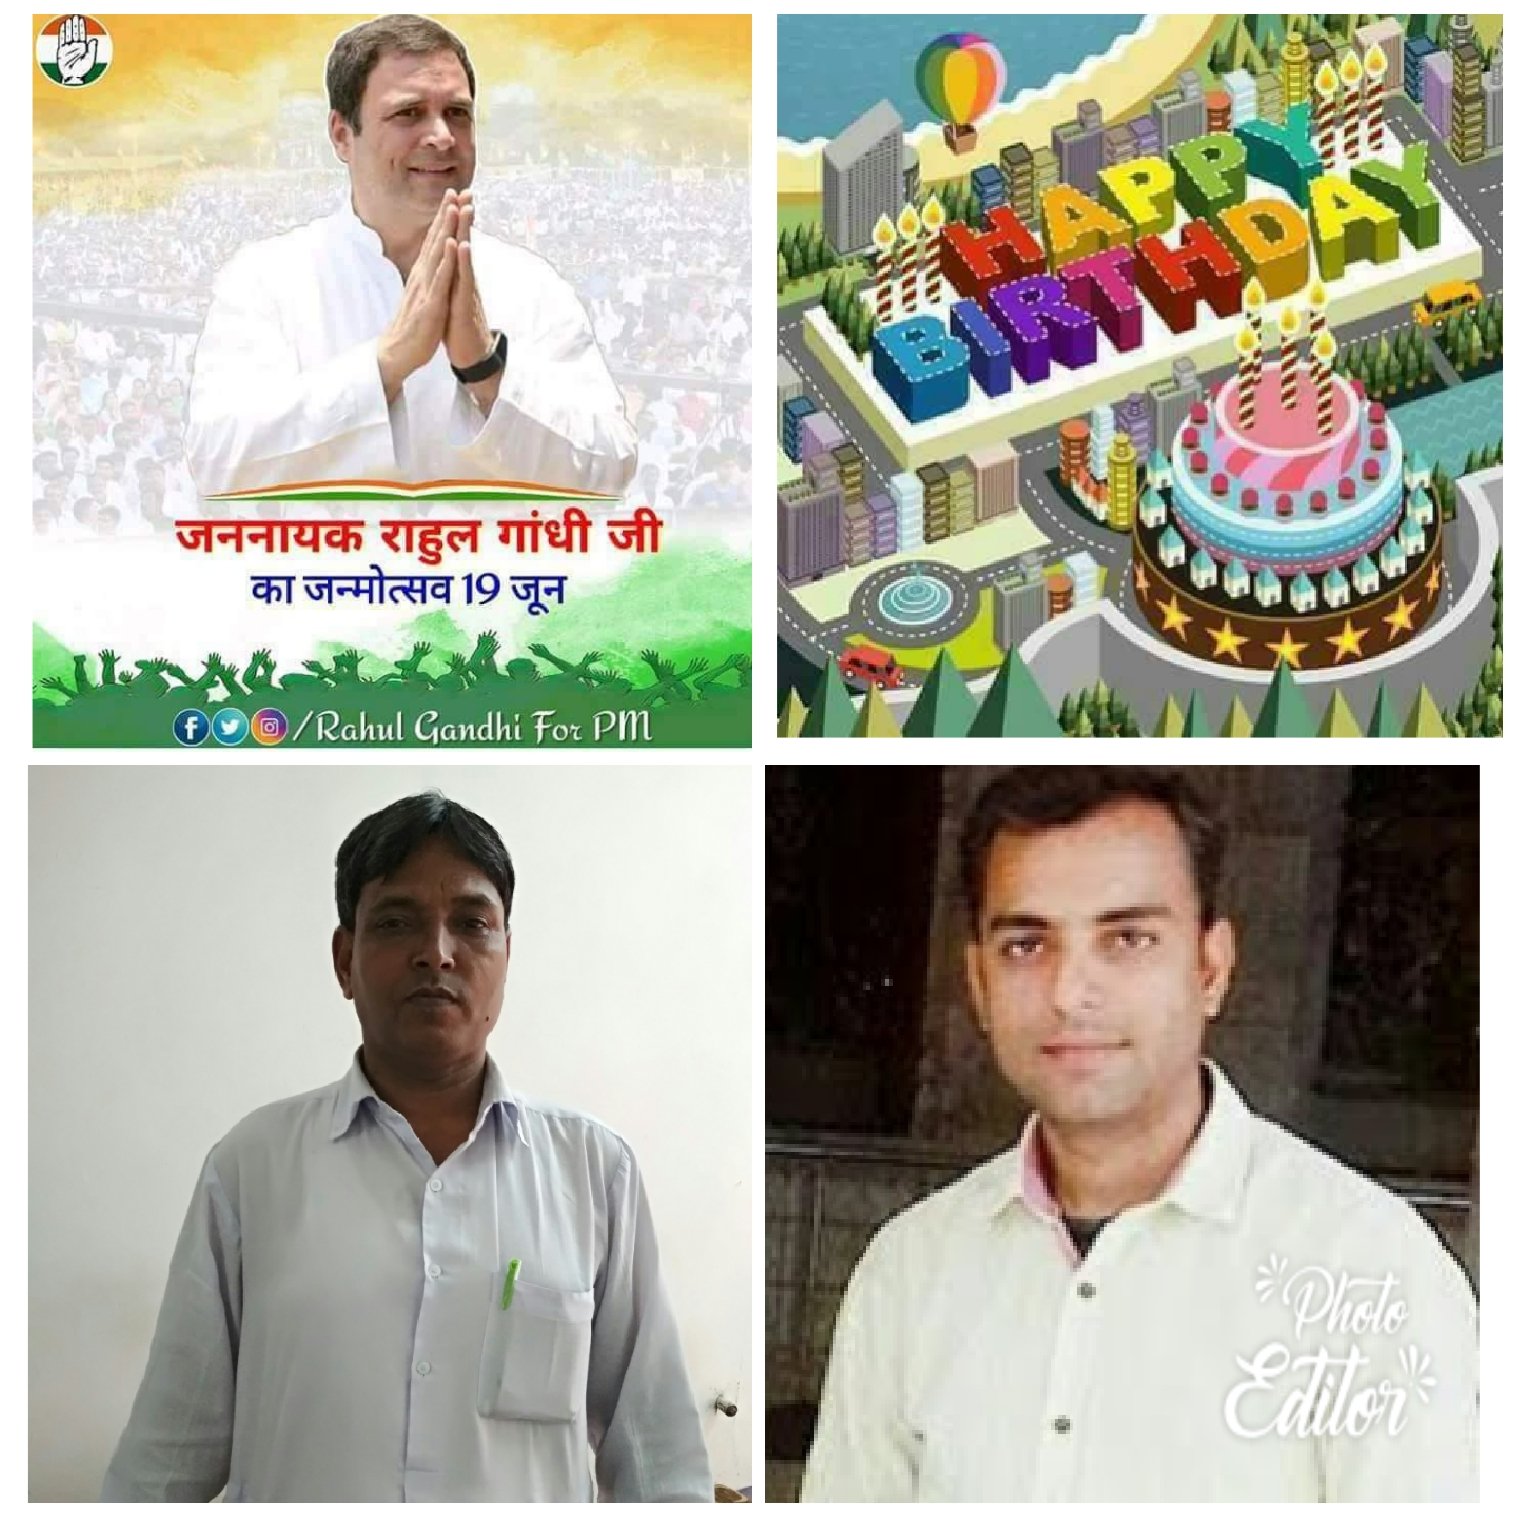 Happy birthday rahul Gandhi ji 